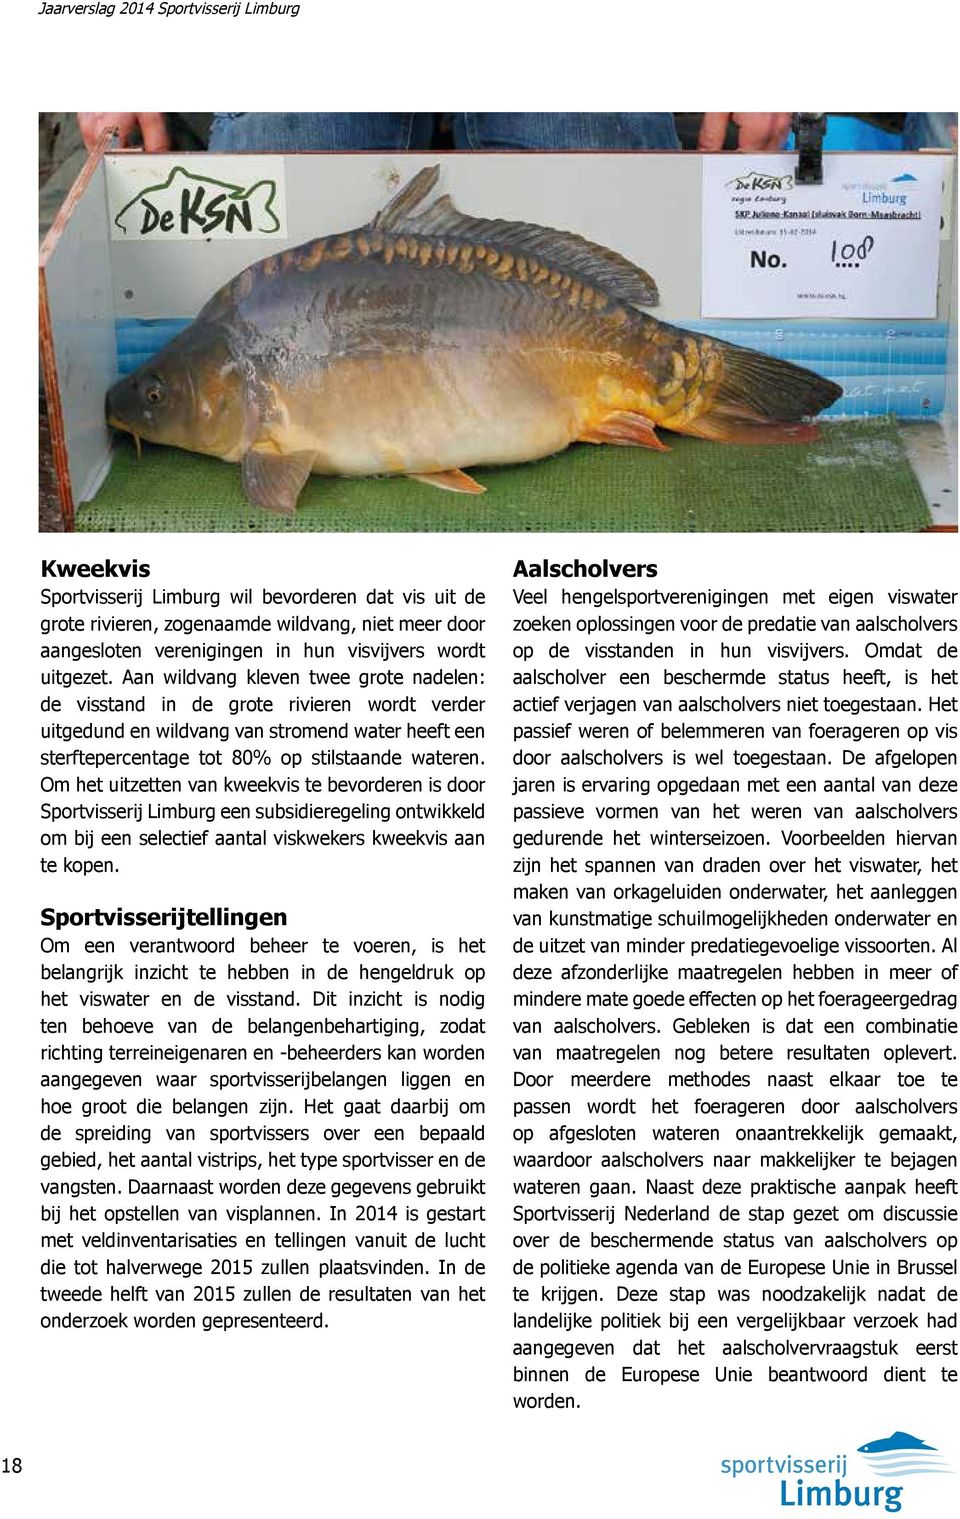 Om het uitzetten van kweekvis te bevorderen is door Sportvisserij Limburg een subsidieregeling ontwikkeld om bij een selectief aantal viskwekers kweekvis aan te kopen.